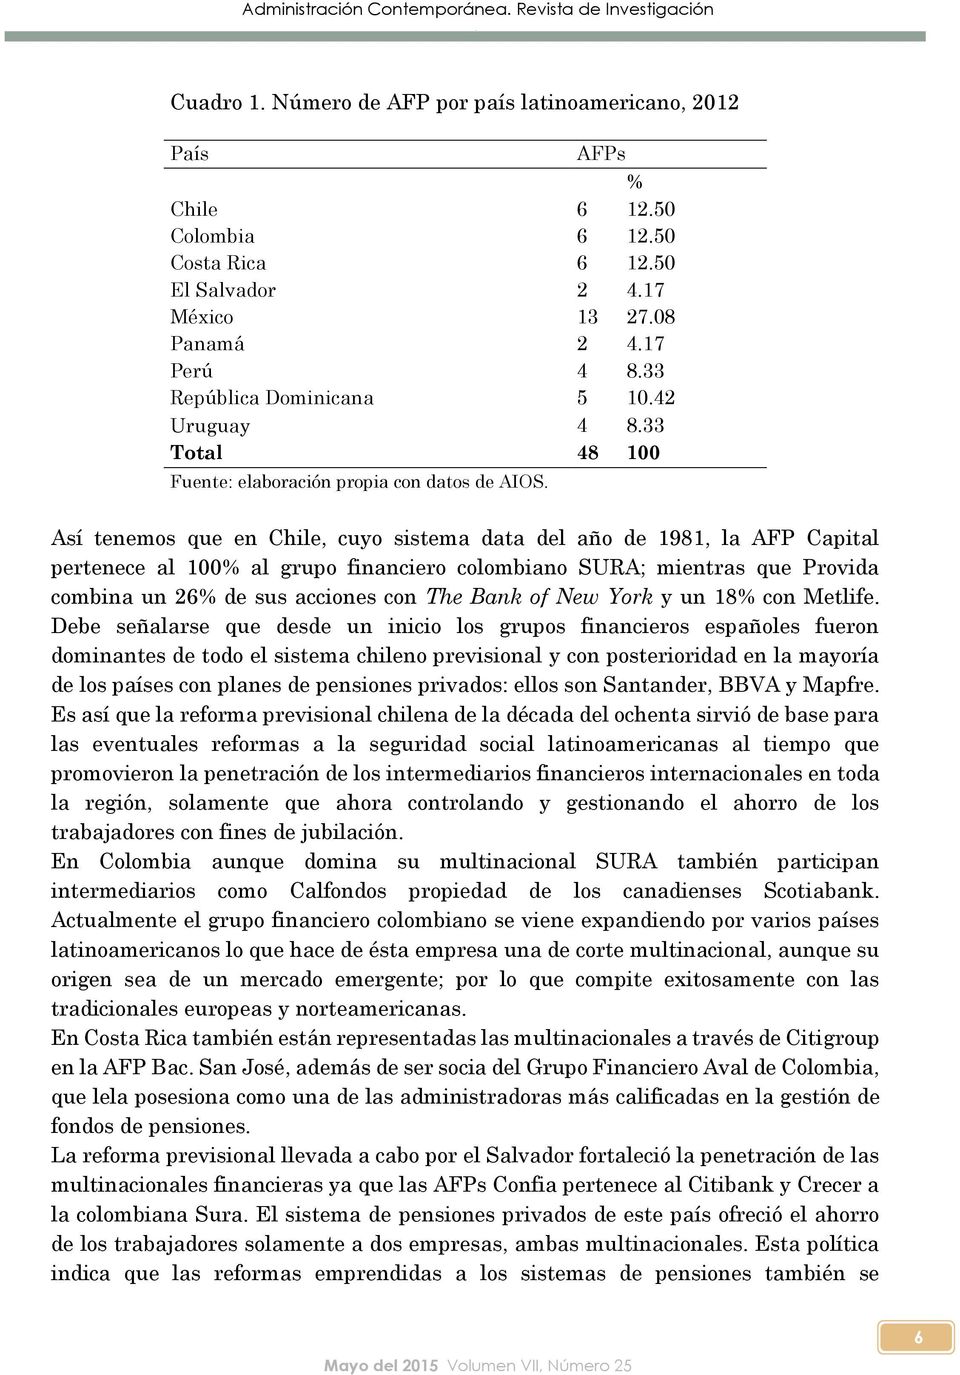 Así tenemos que en Chile, cuyo sistema data del año de 1981, la AFP Capital pertenece al 100% al grupo financiero colombiano SURA; mientras que Provida combina un 26% de sus acciones con The Bank of